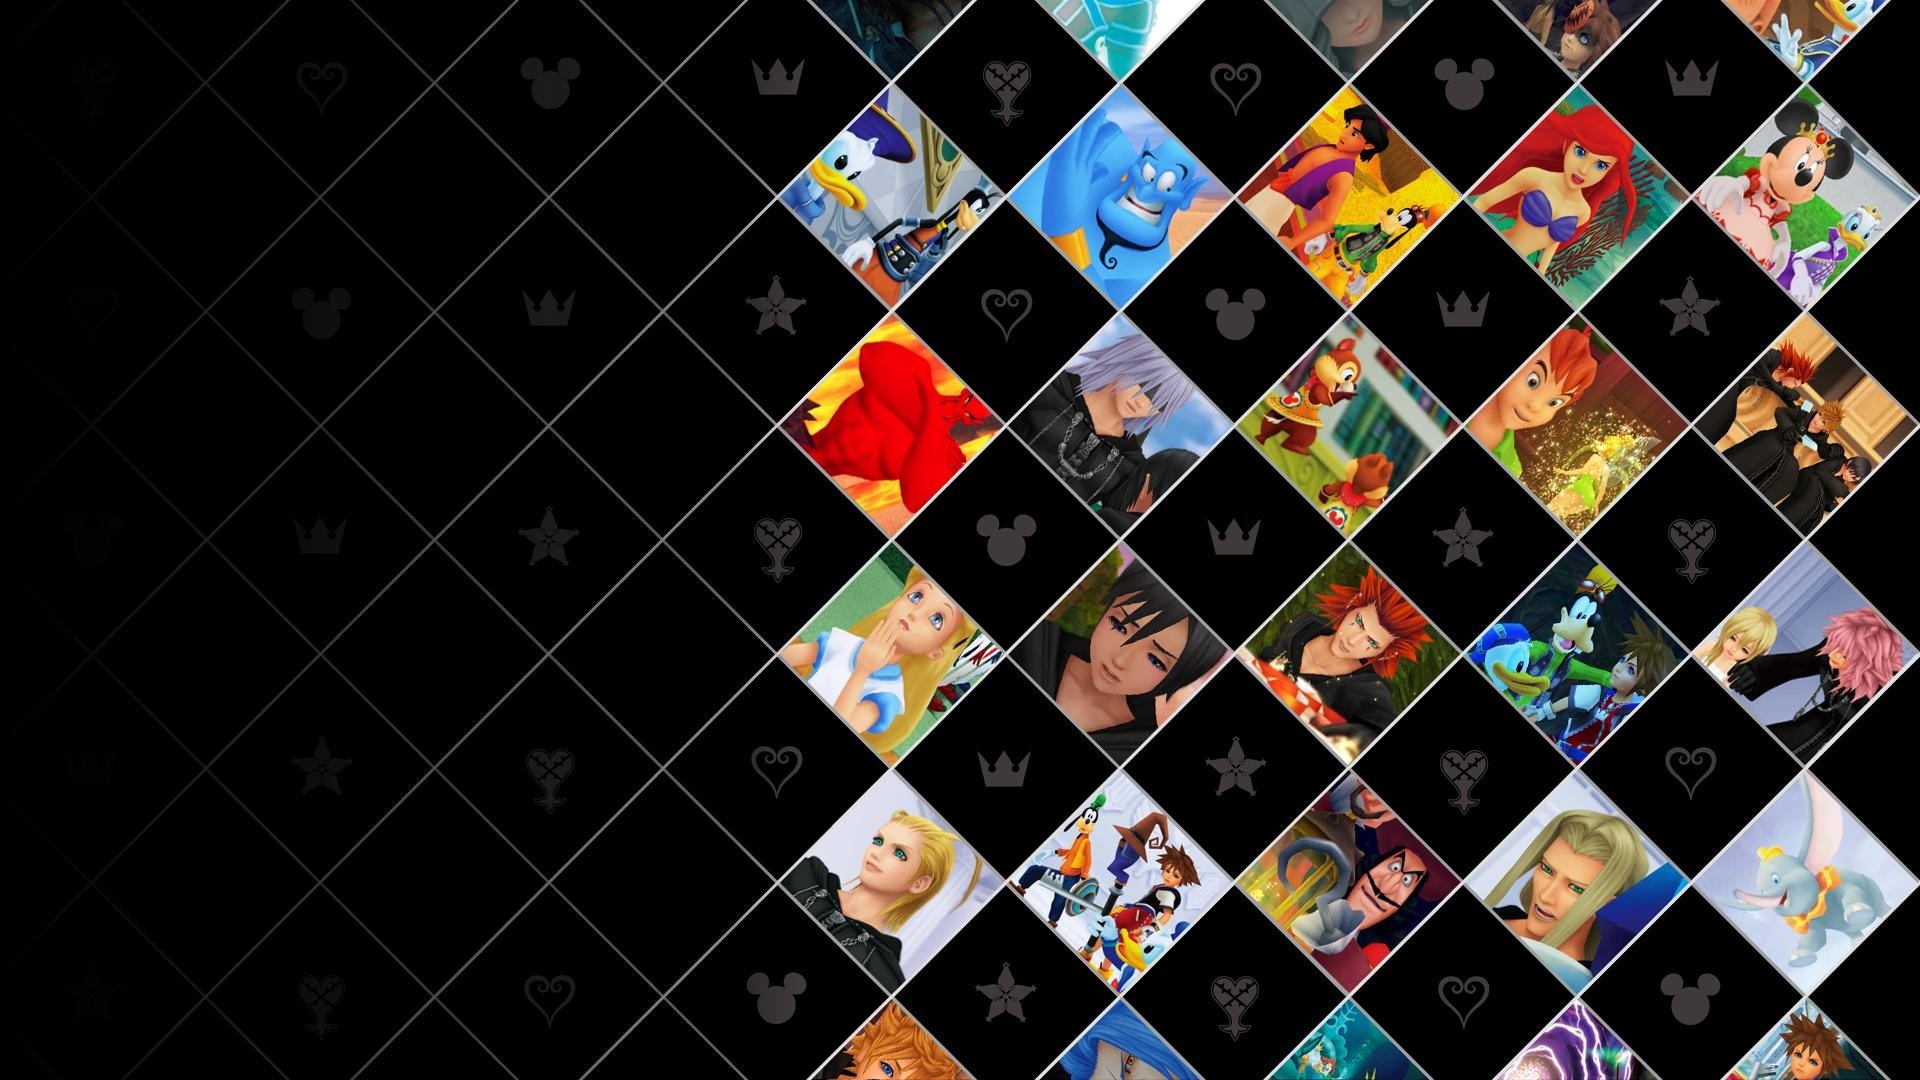 1920x1080  Kingdom Hearts Hd 1.5 Remix wallpaper 226031